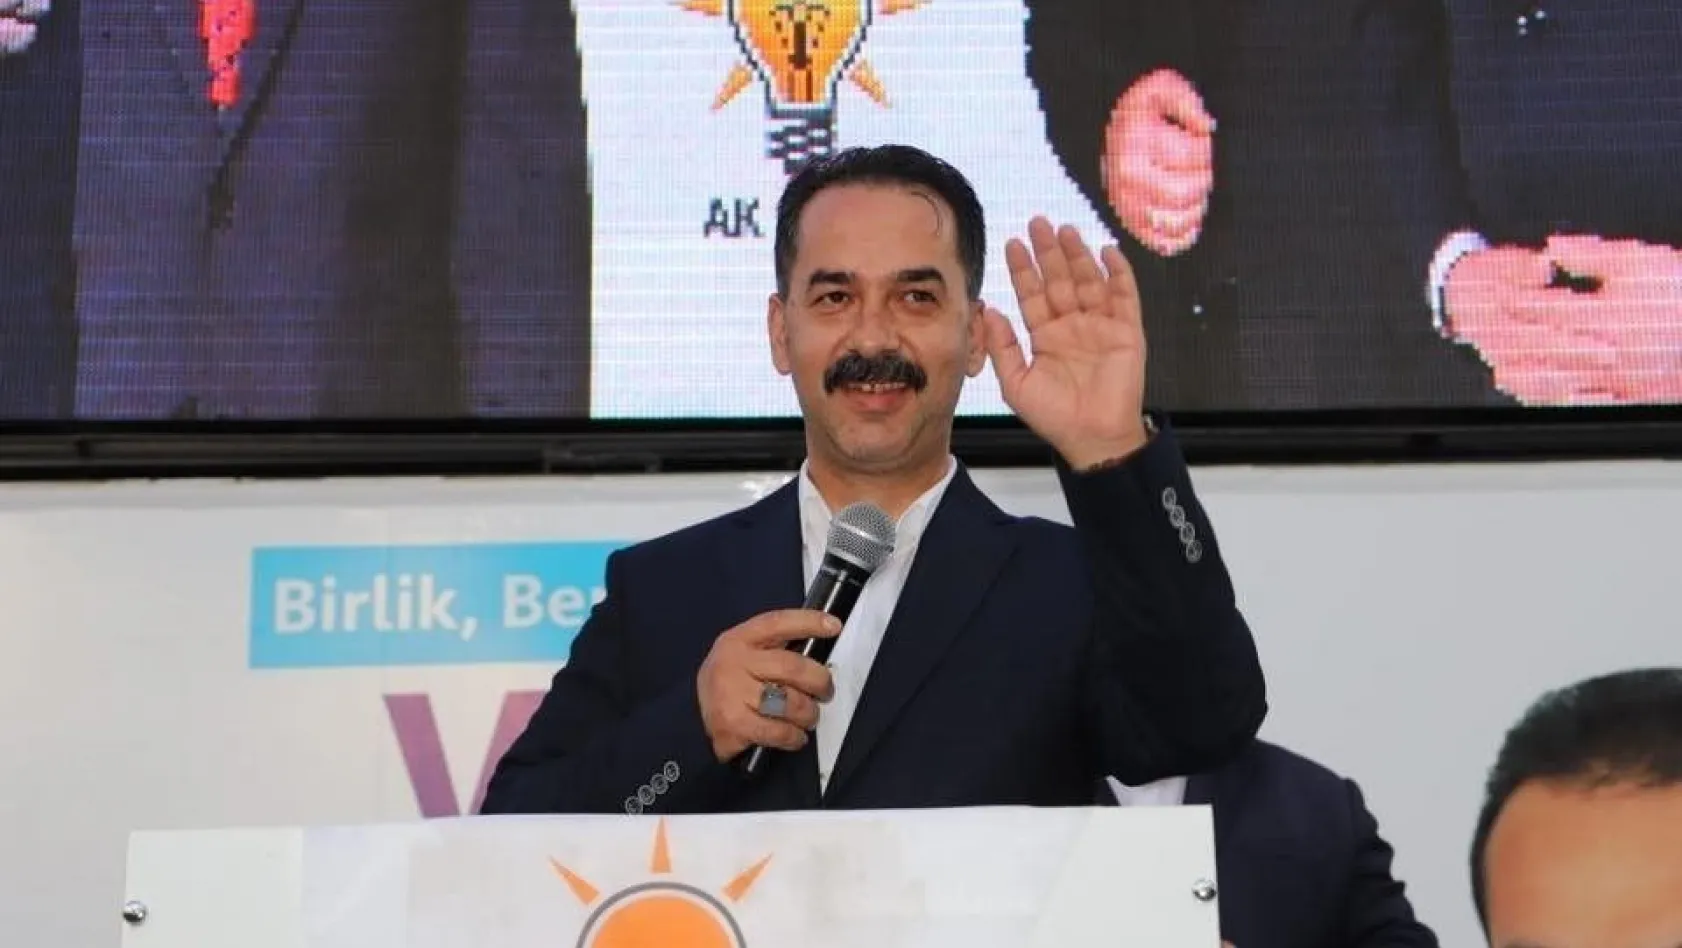 Şireci: 'Türkiye siyasetinde ezberleri bozduk'
